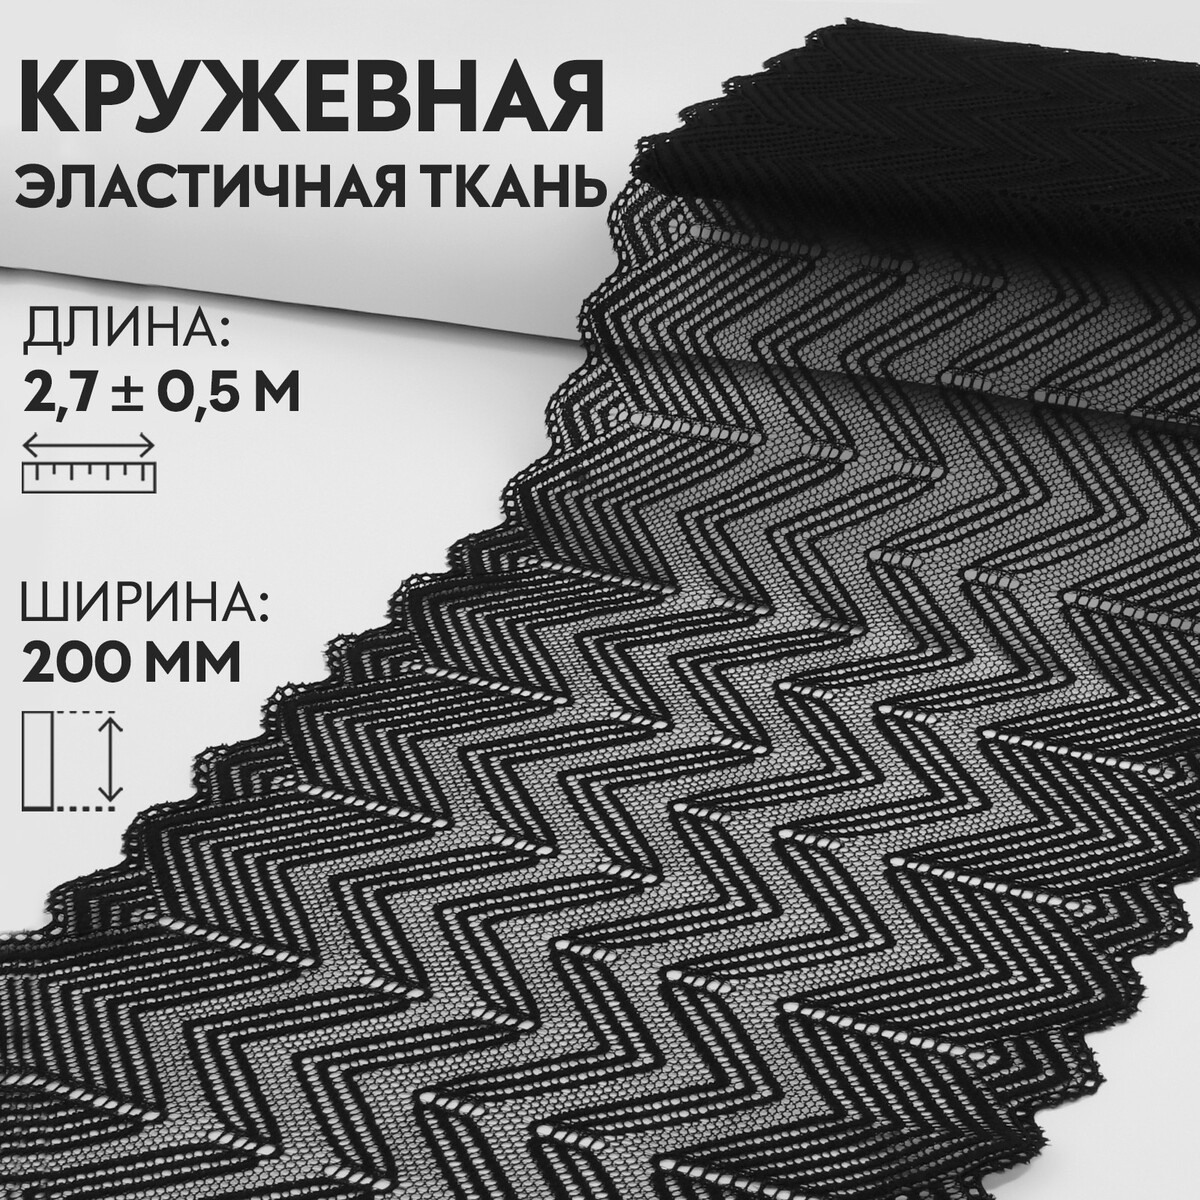 Кружевная эластичная ткань, 200 мм × 2,7 ± 0,5 м, цвет черный